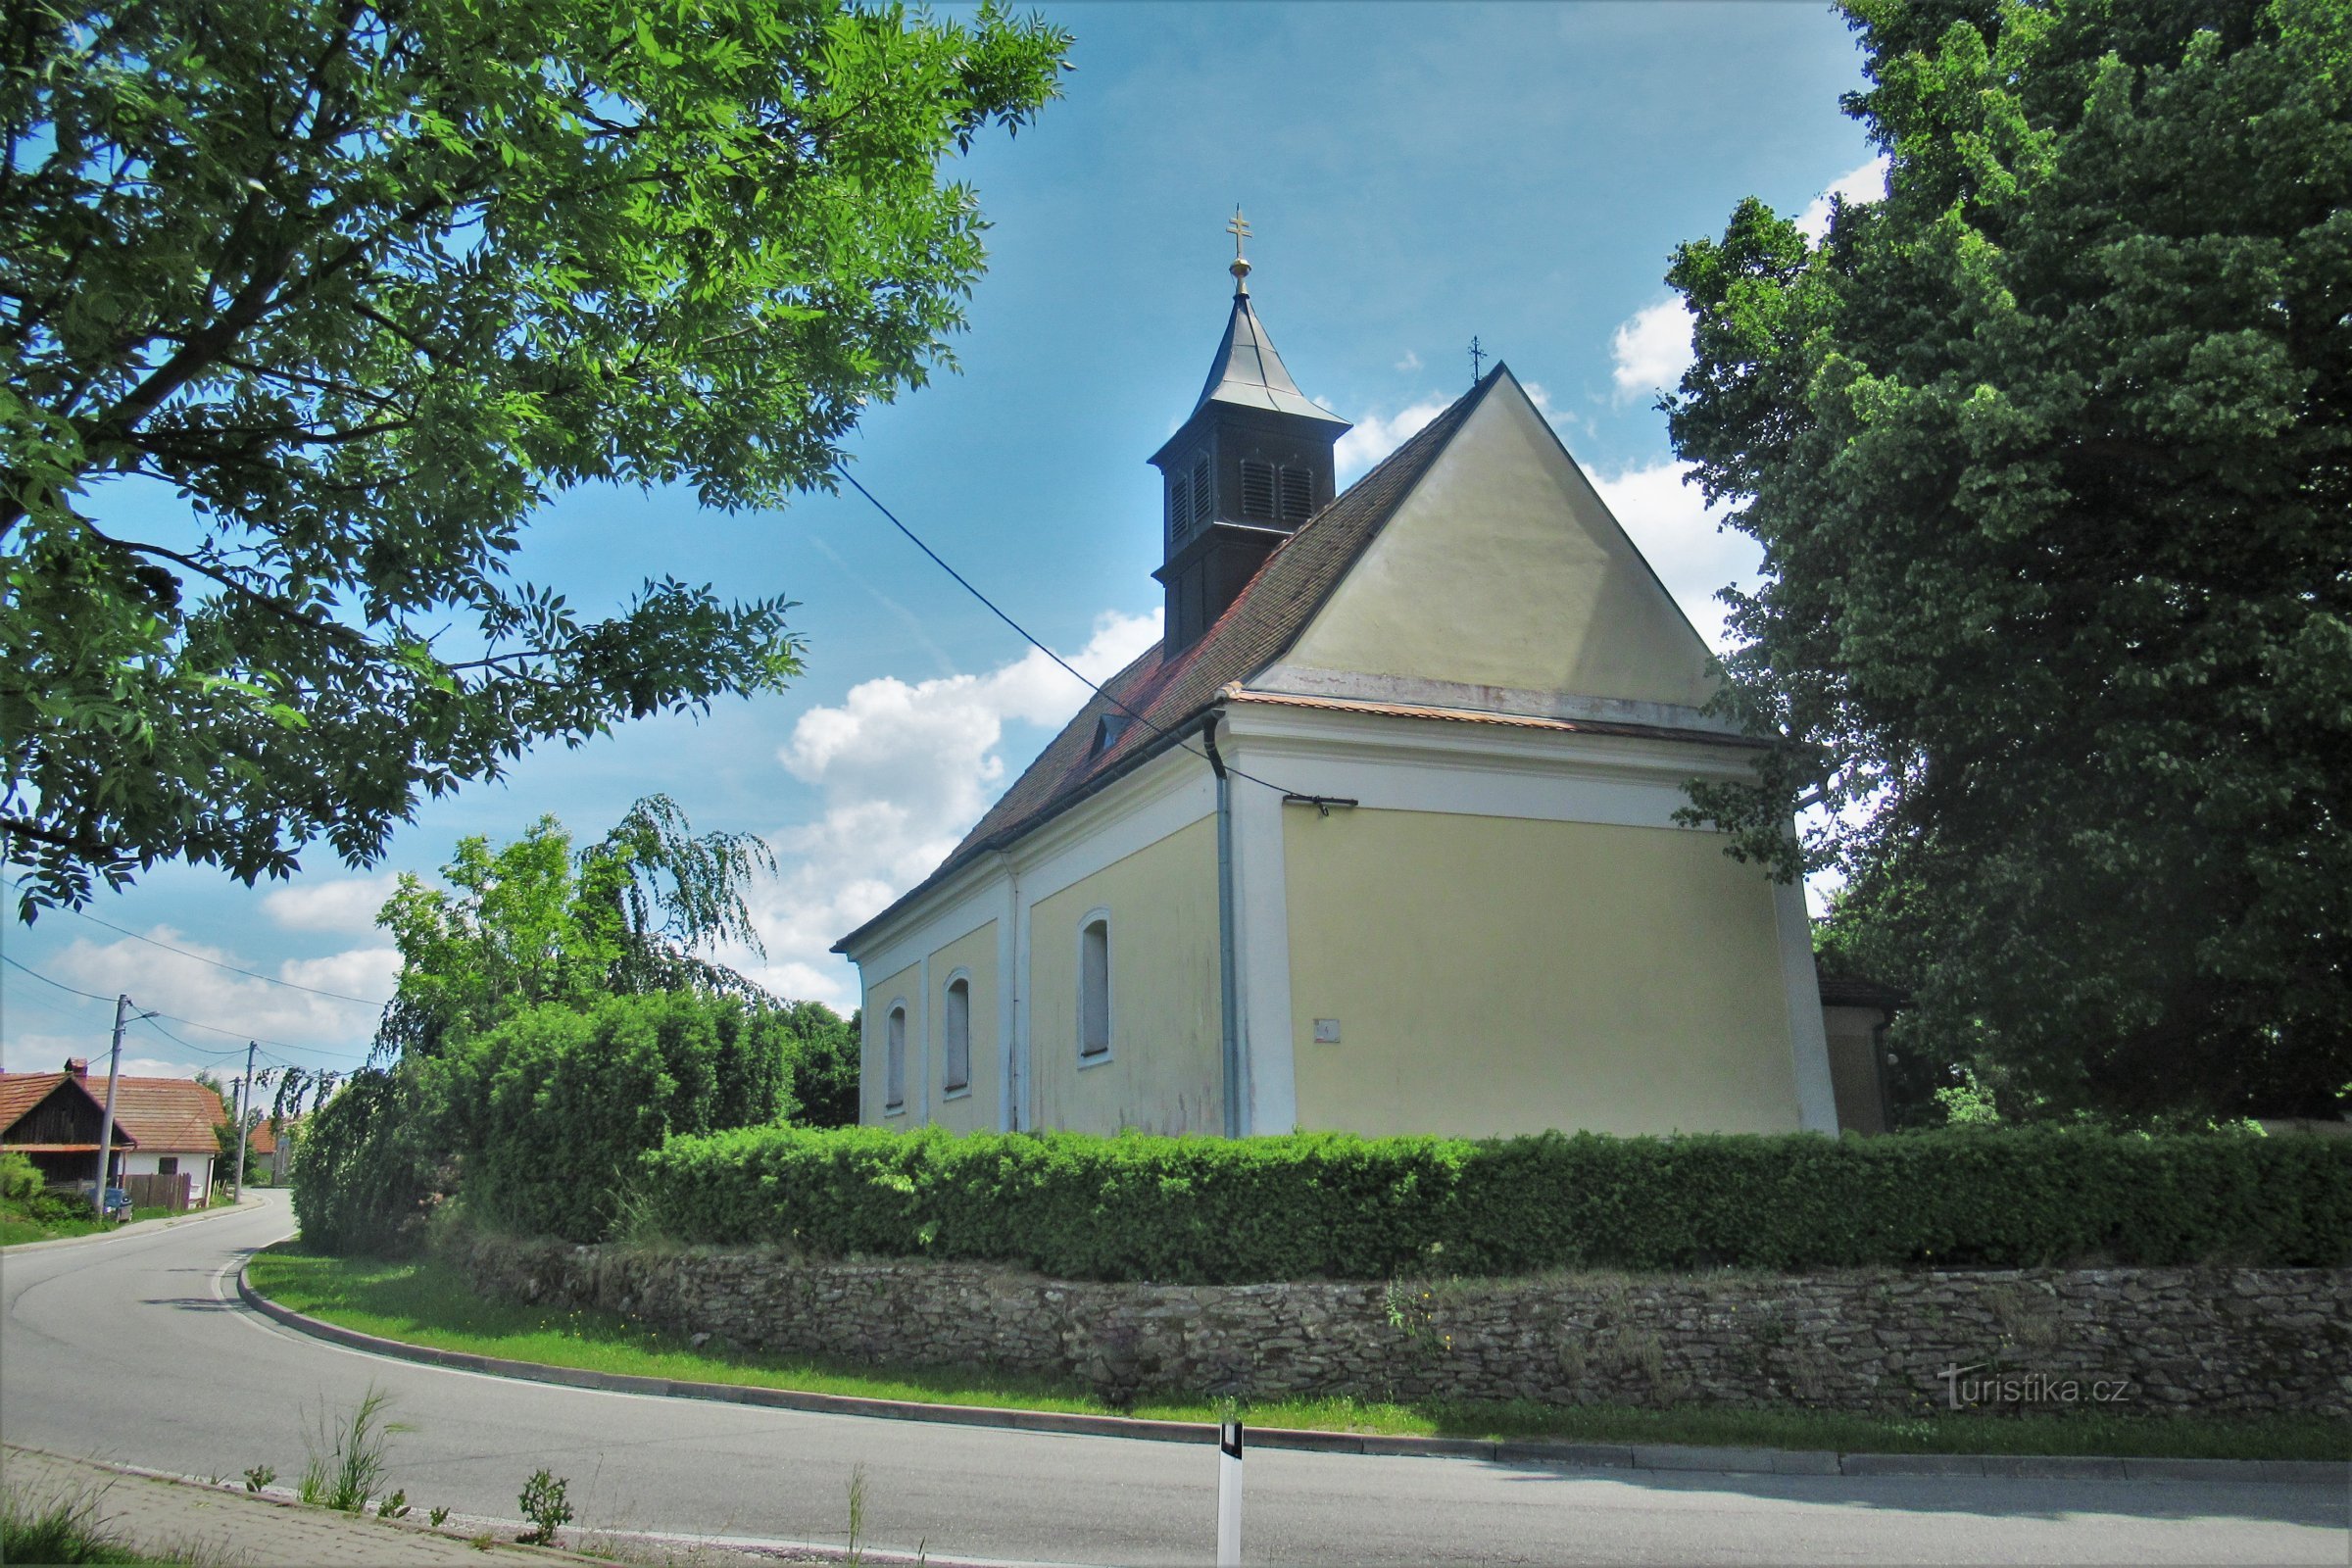 Nemčice - crkva sv. Nikole